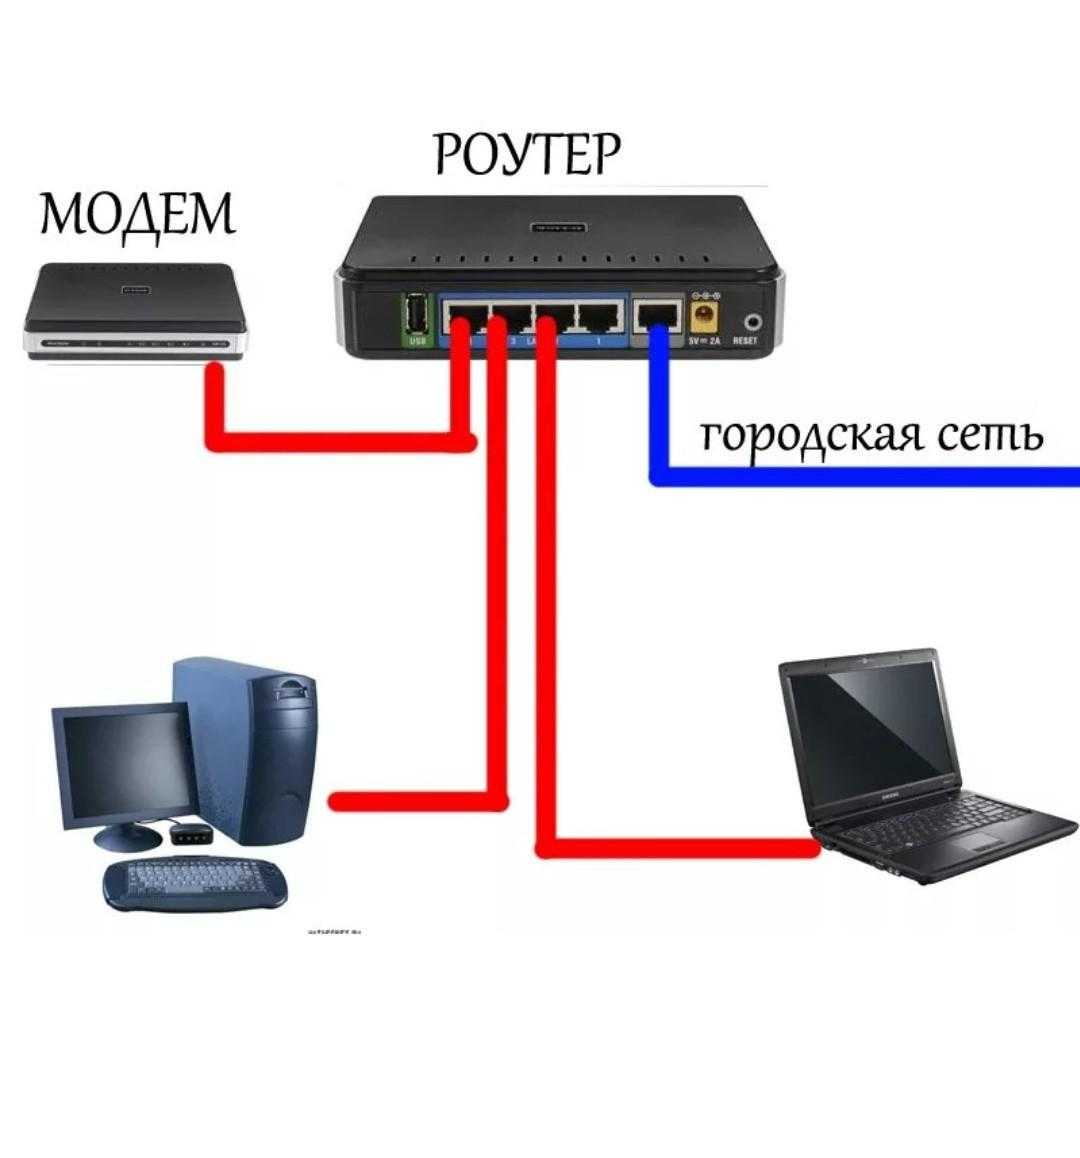 Можно подключить интернет через кабель. Как подключается модем к компьютеру. Схема подключения модема. Как подключить второй компьютер к интернету через кабель к роутеру. Провод для подключения модема к роутеру.